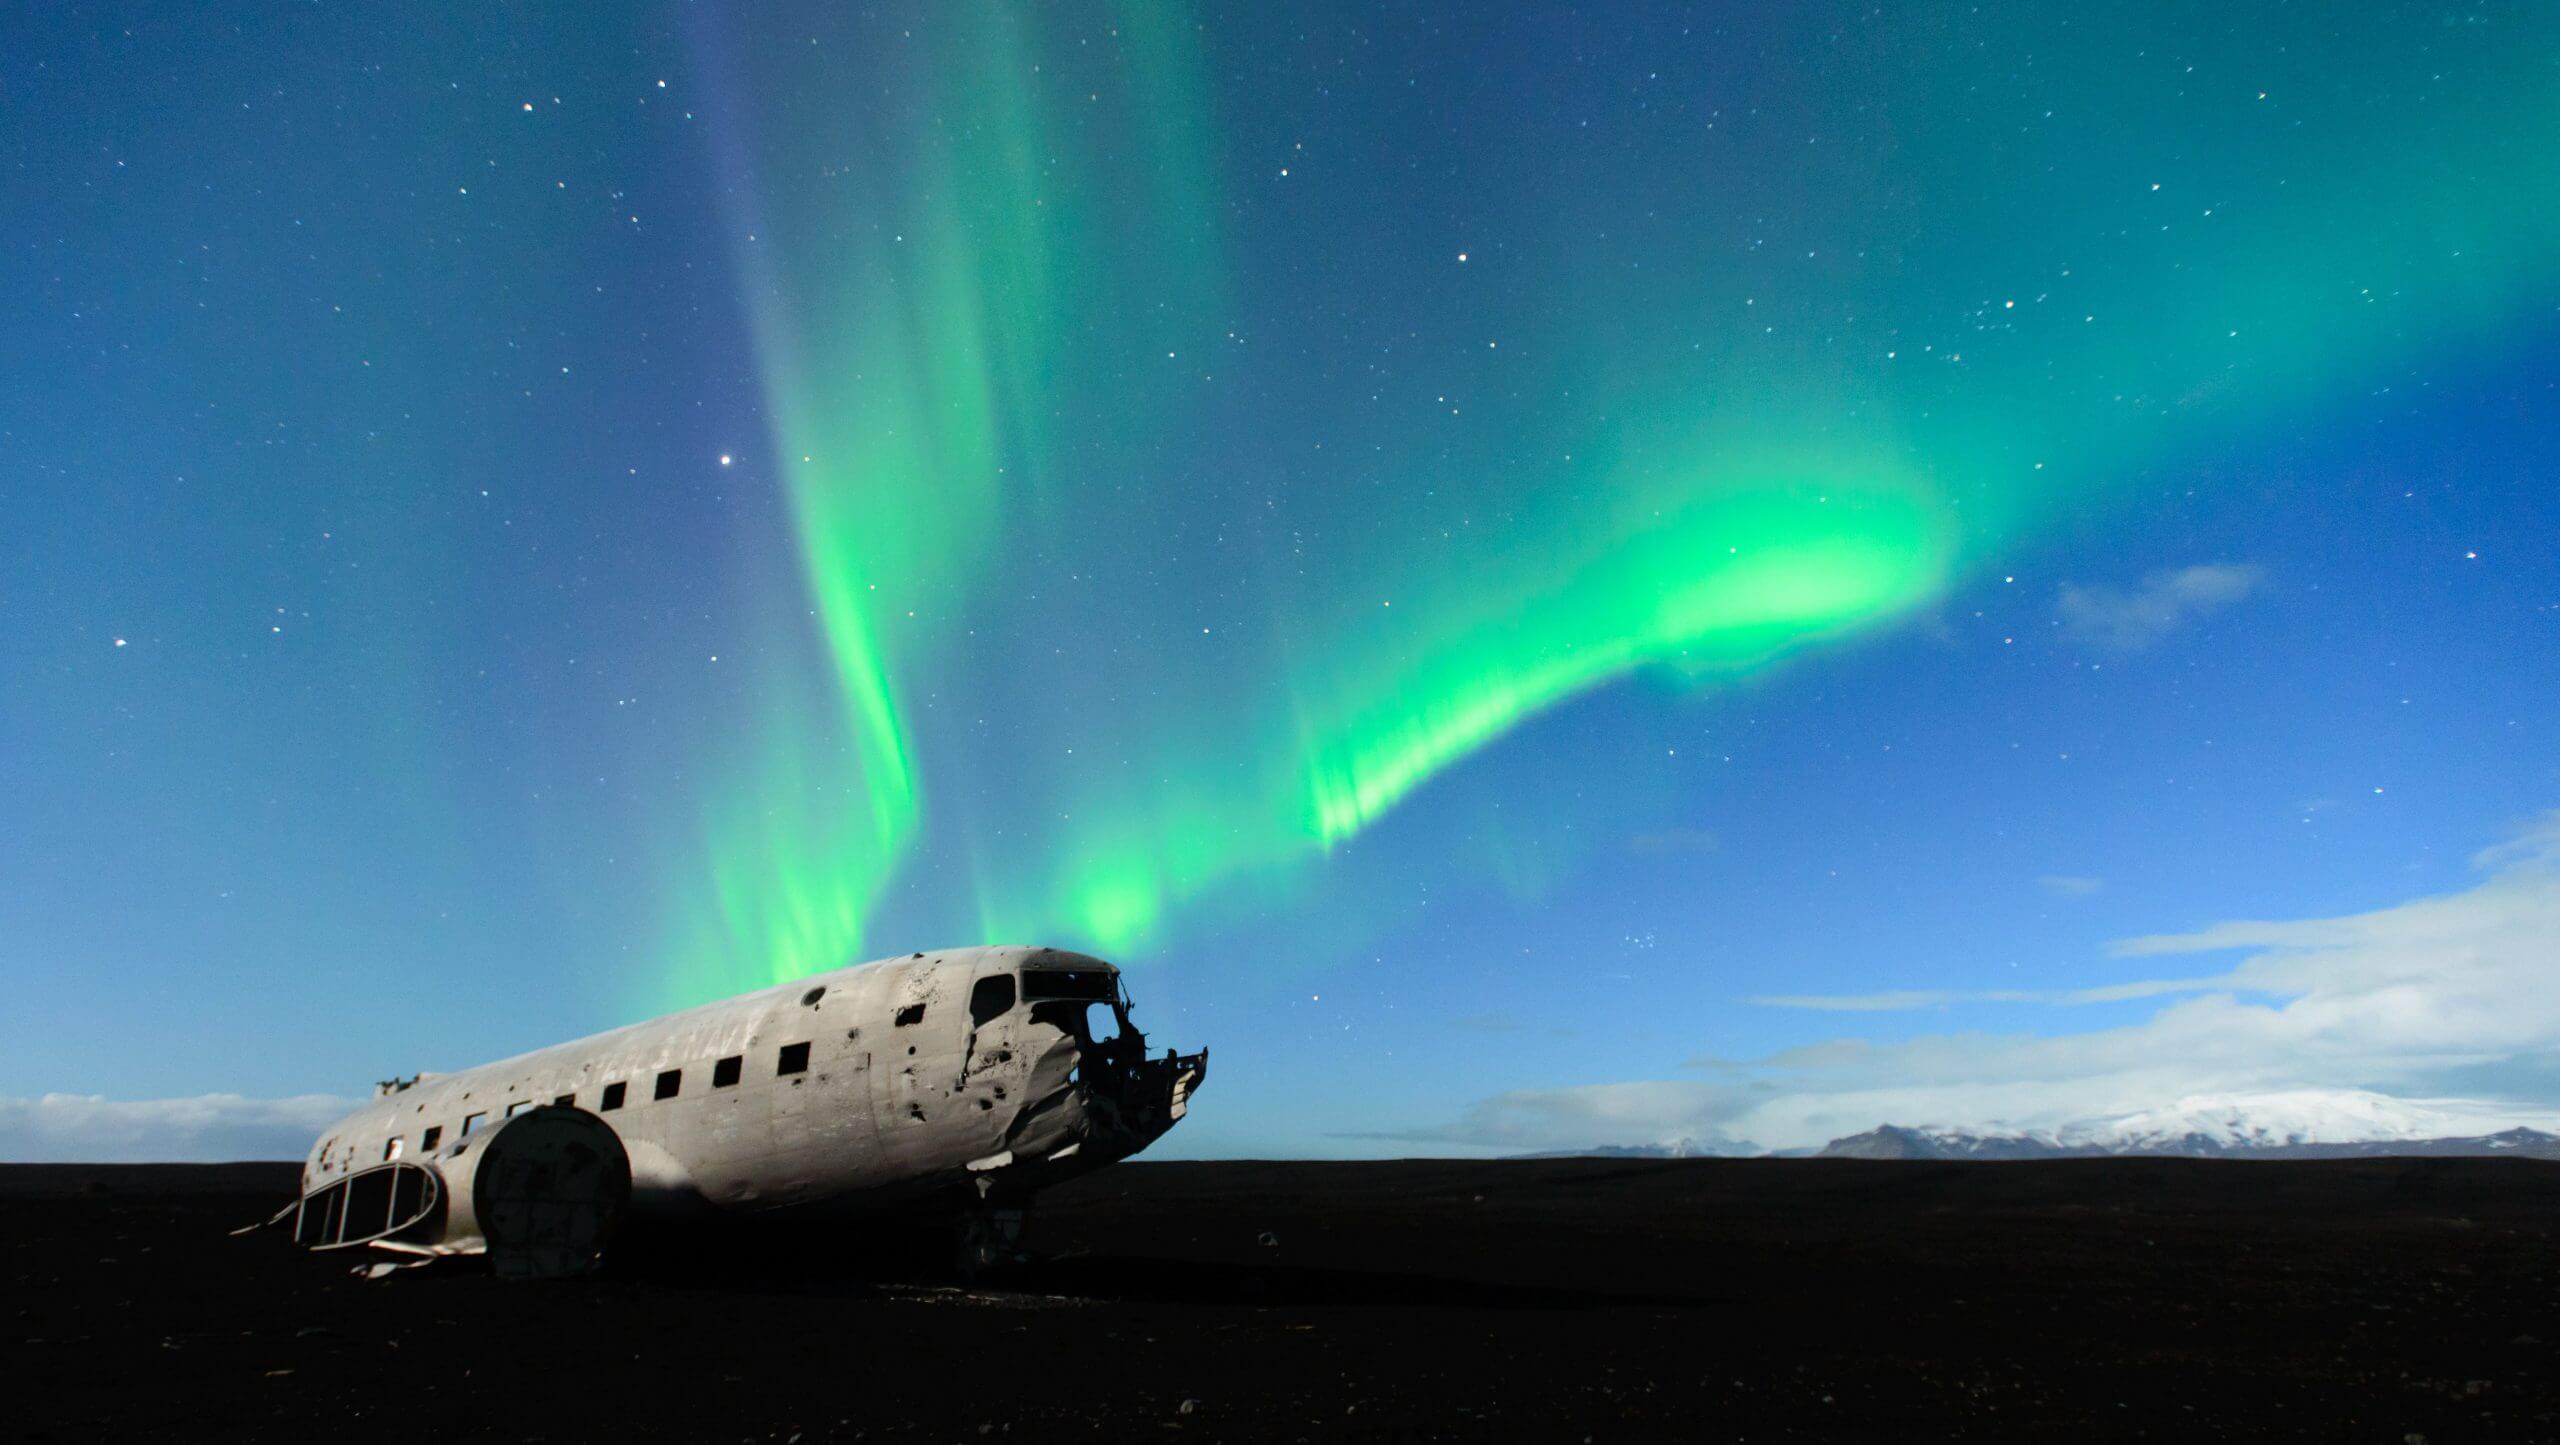 细说冰岛景点之DC-3飞机残骸| Nordical 冰岛旅行